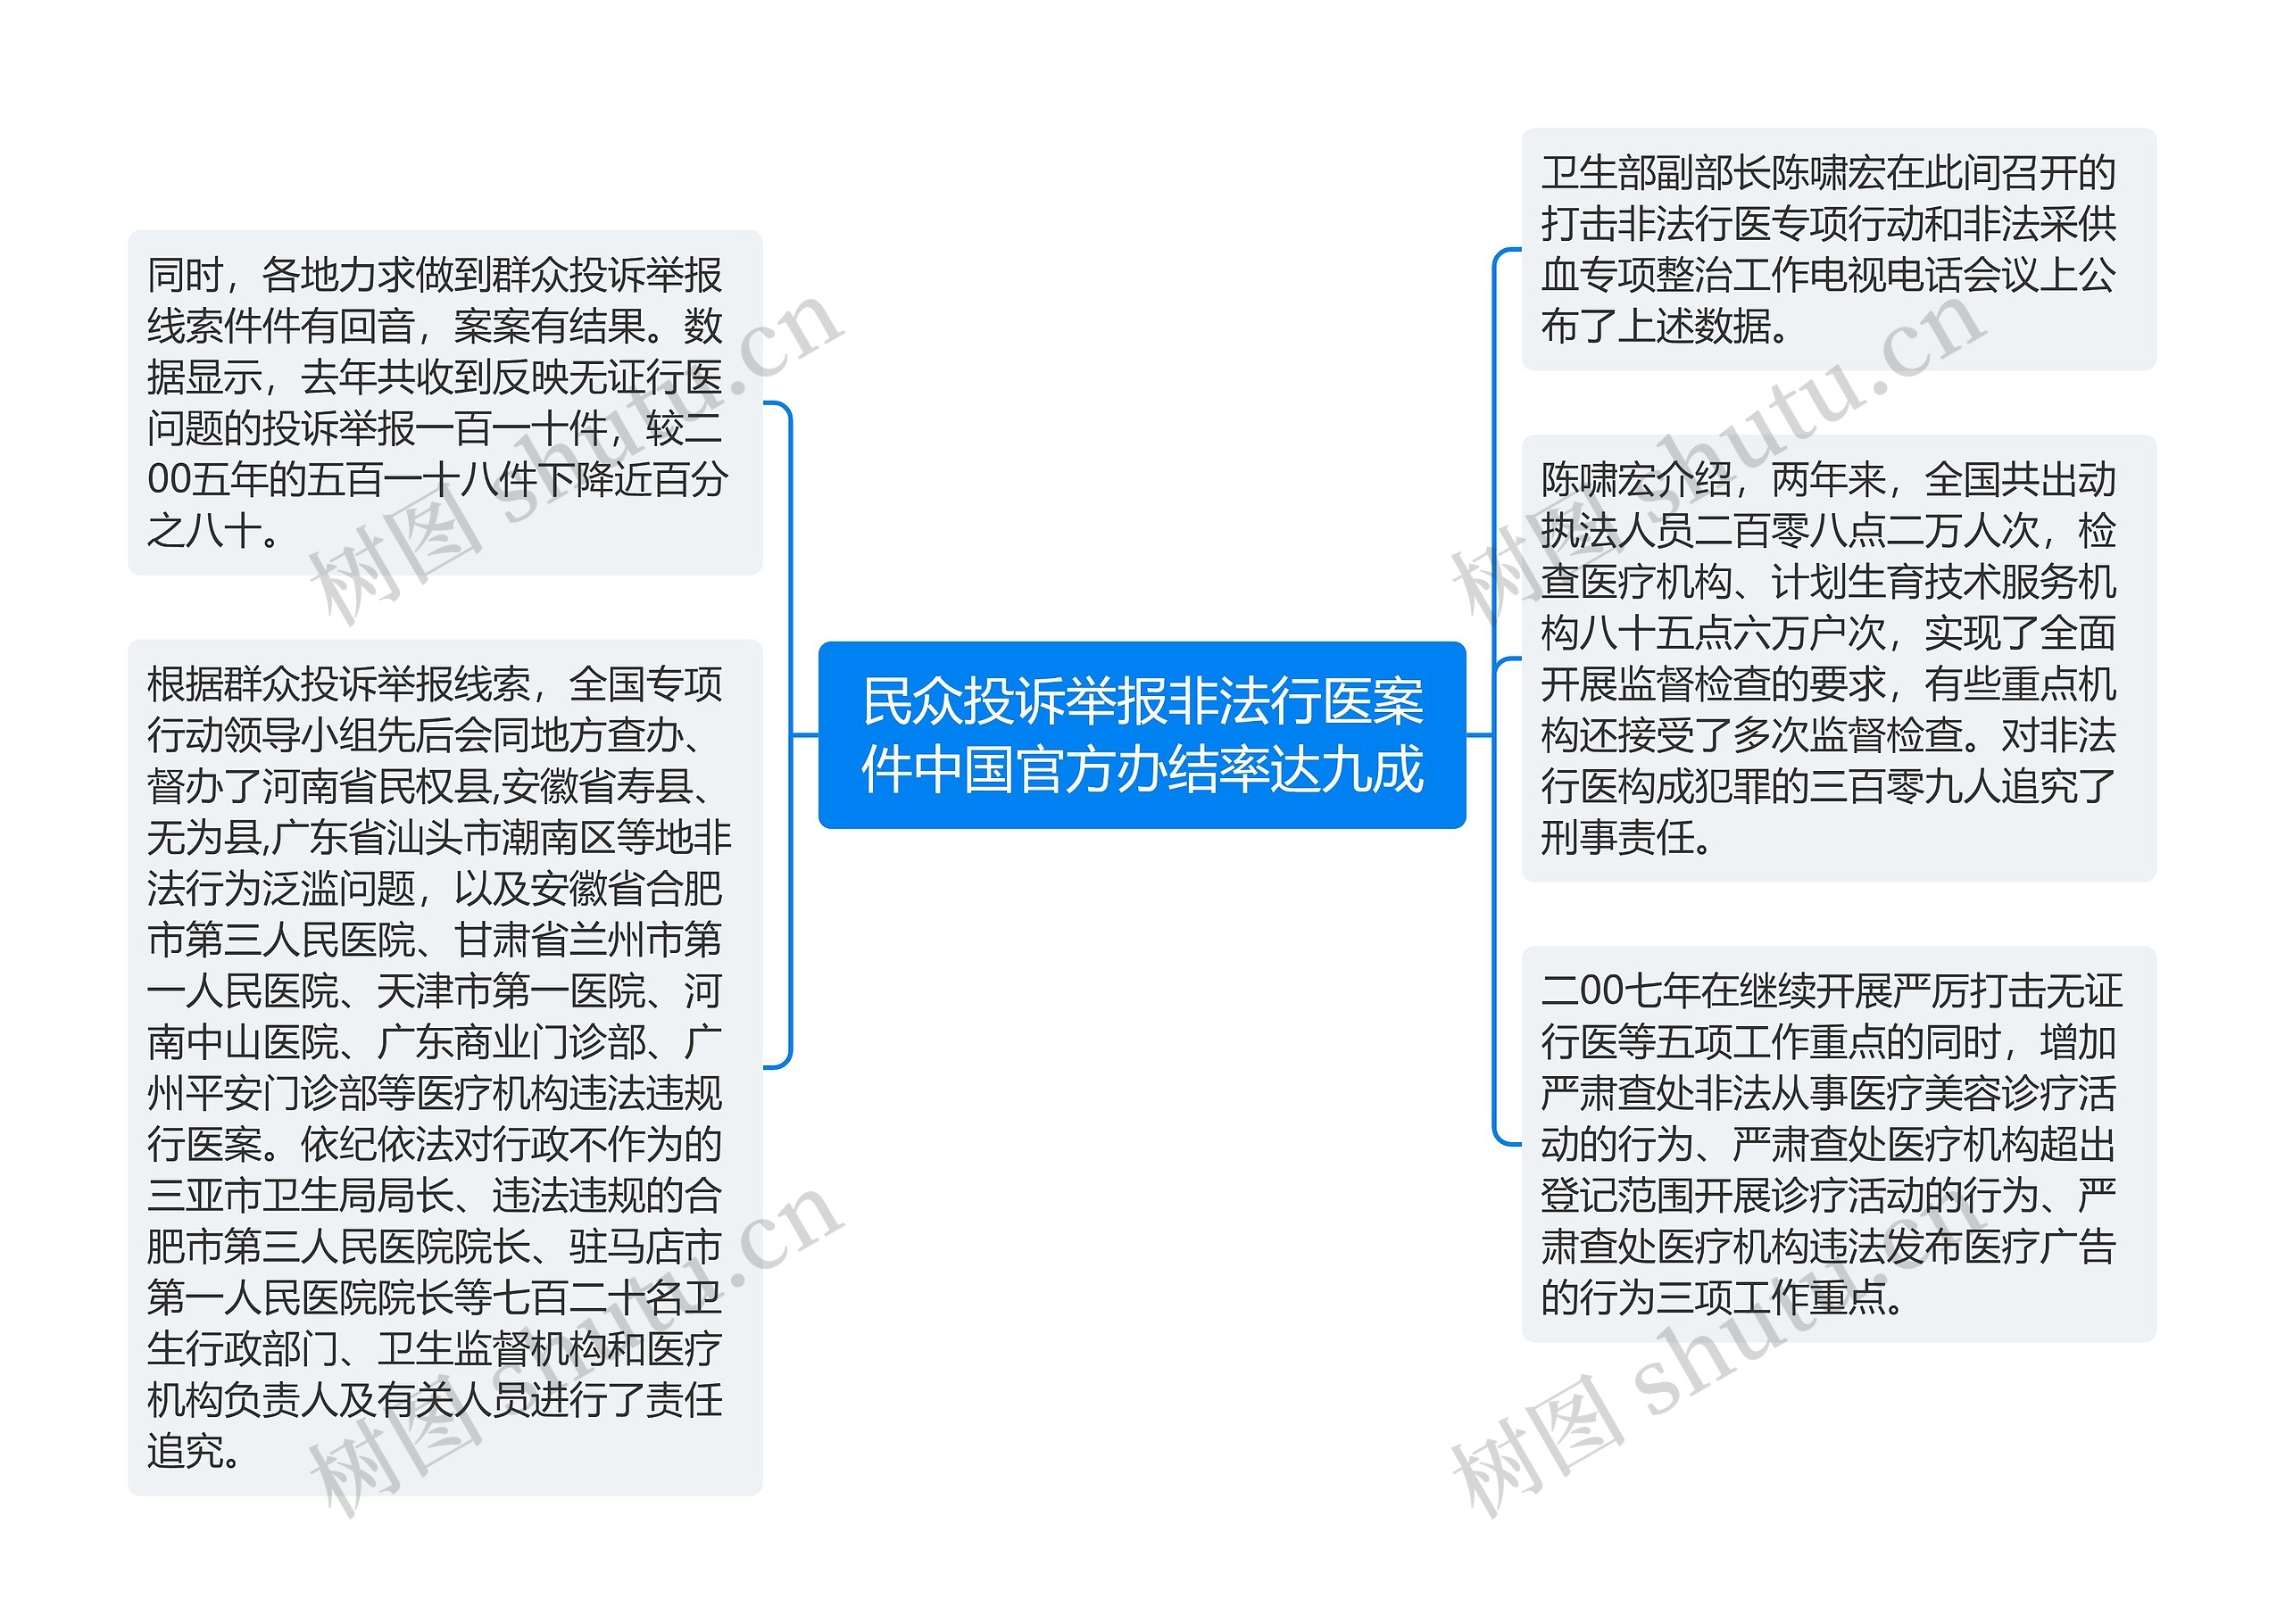 民众投诉举报非法行医案件中国官方办结率达九成